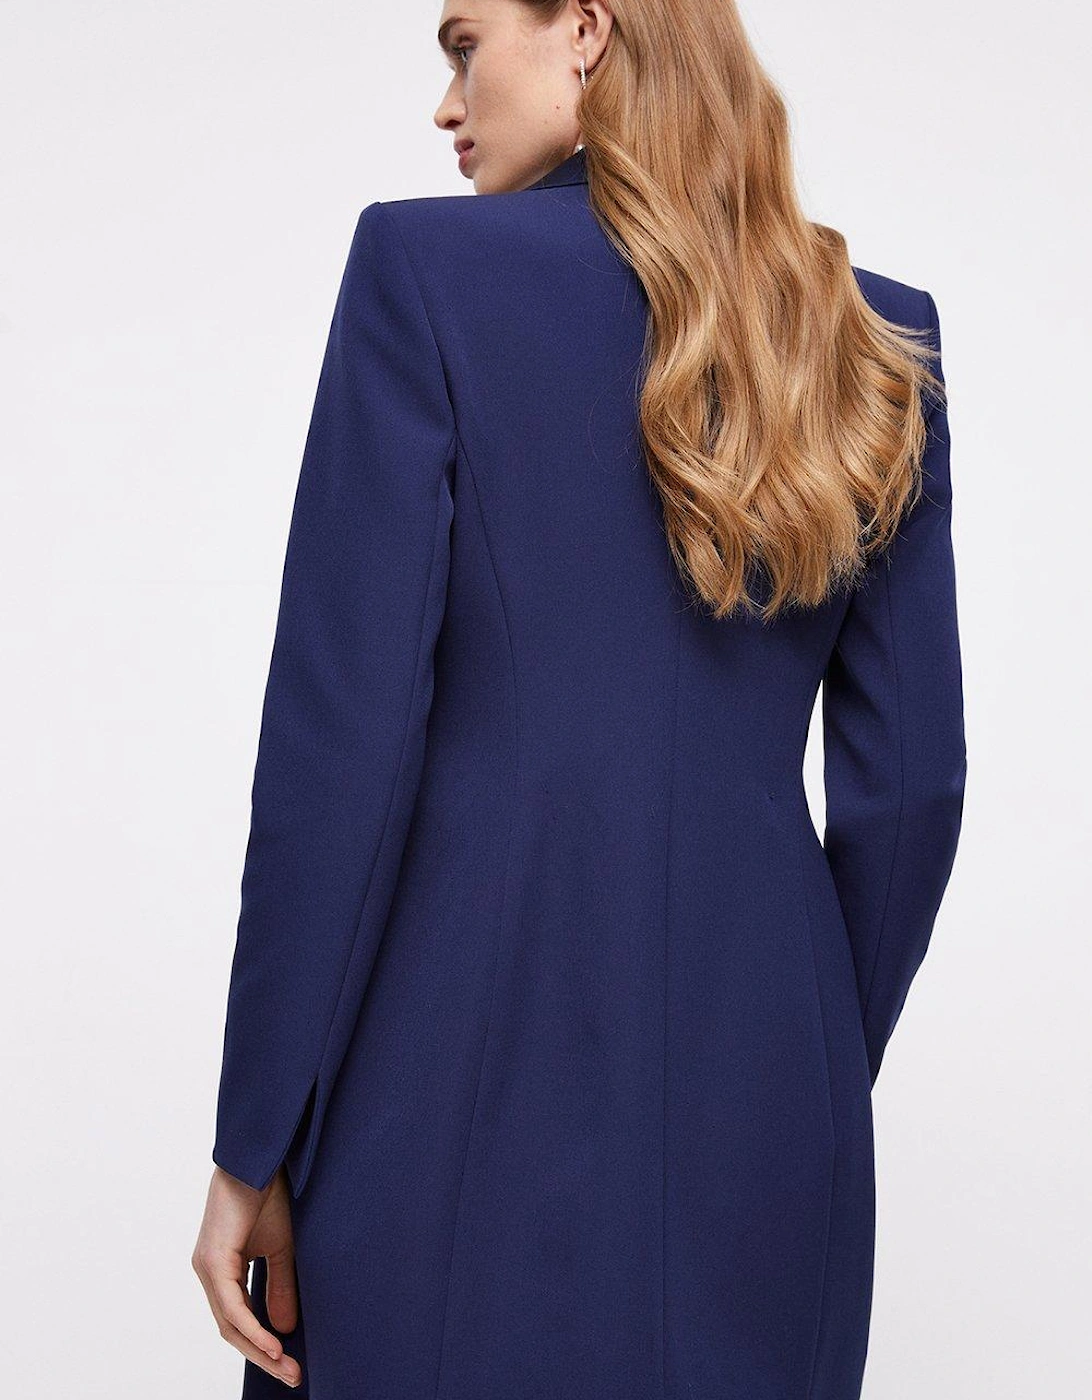 Premium Twist Tailored Blazer Dress